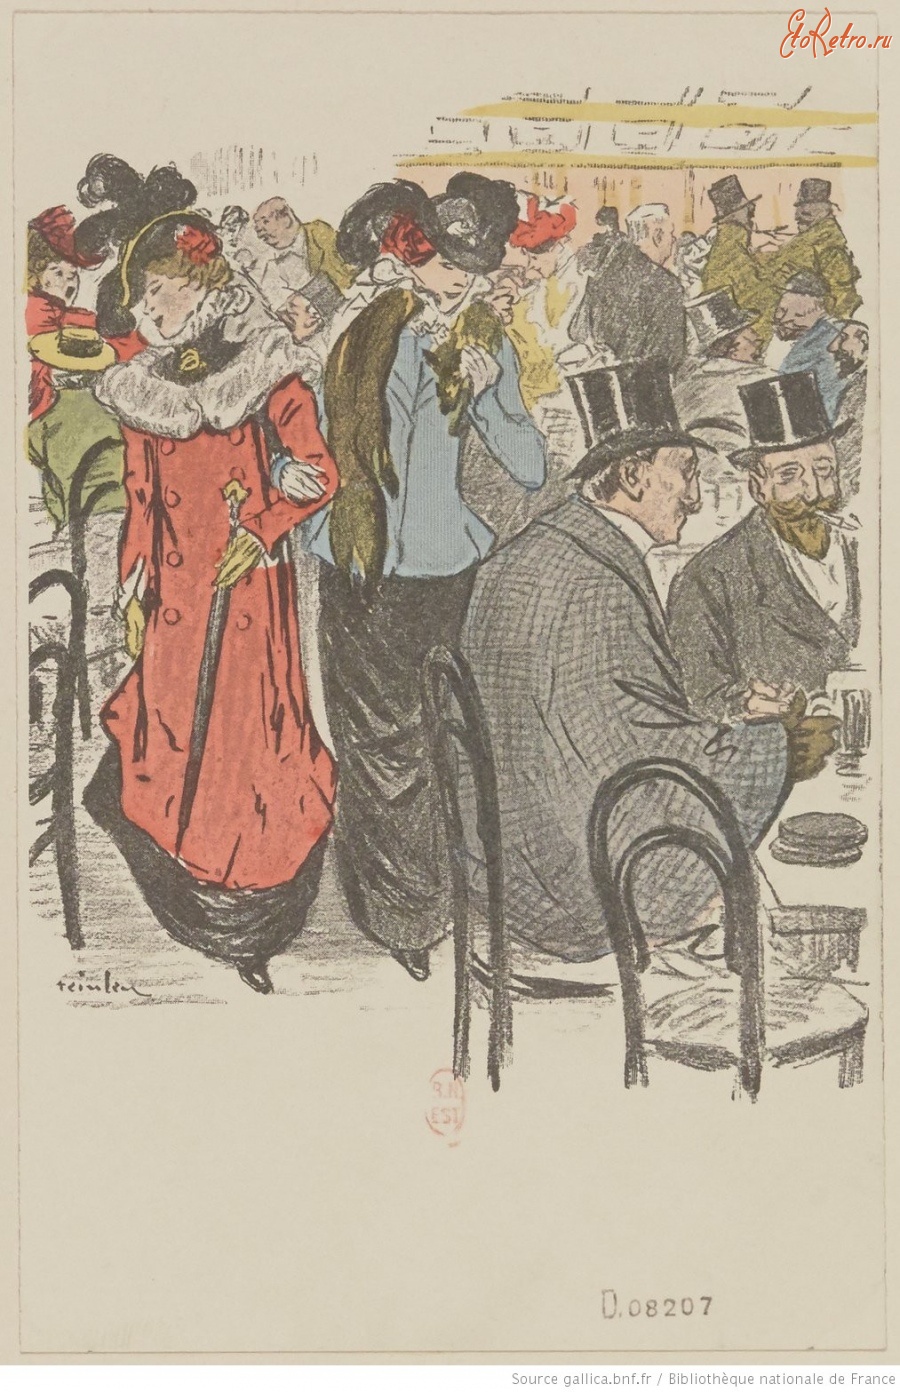 Ретро открытки - Парижанки, 1902